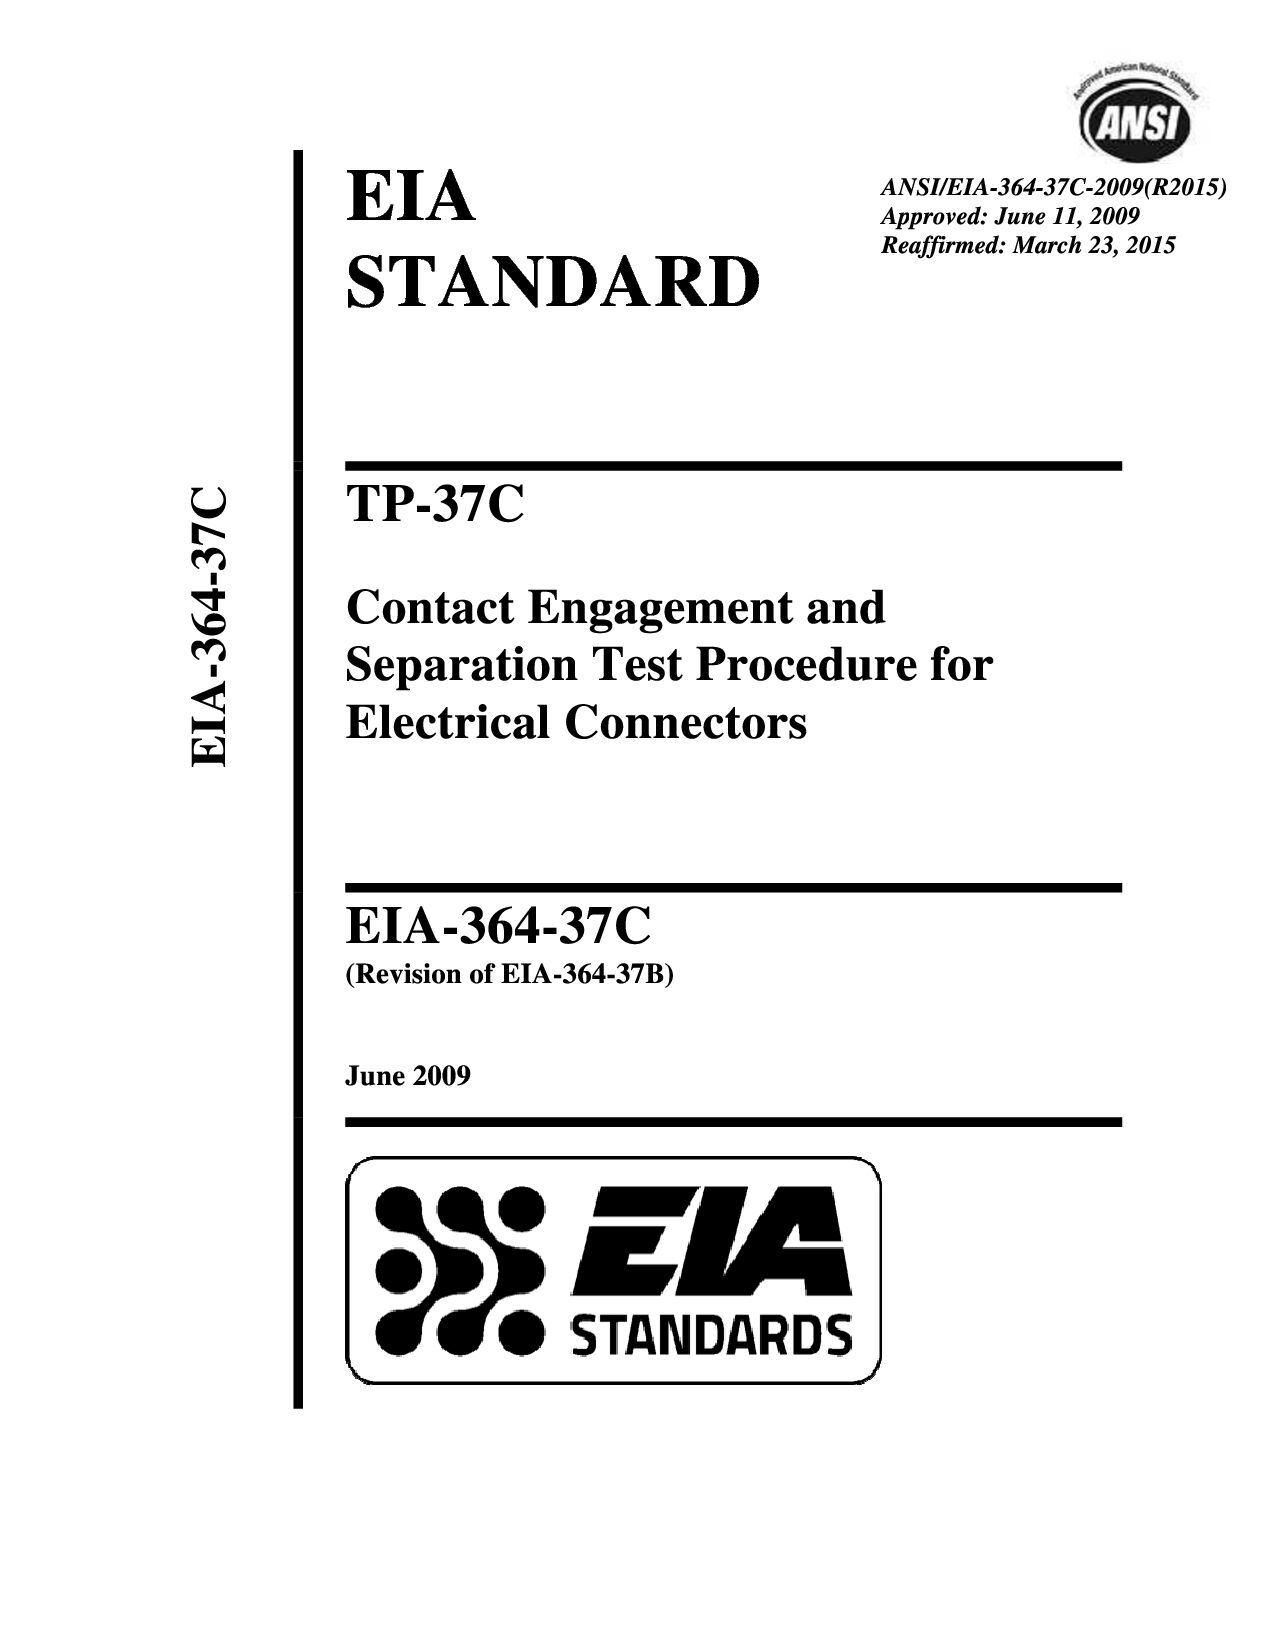 ANSI/EIA 364-37C:2009(2015)